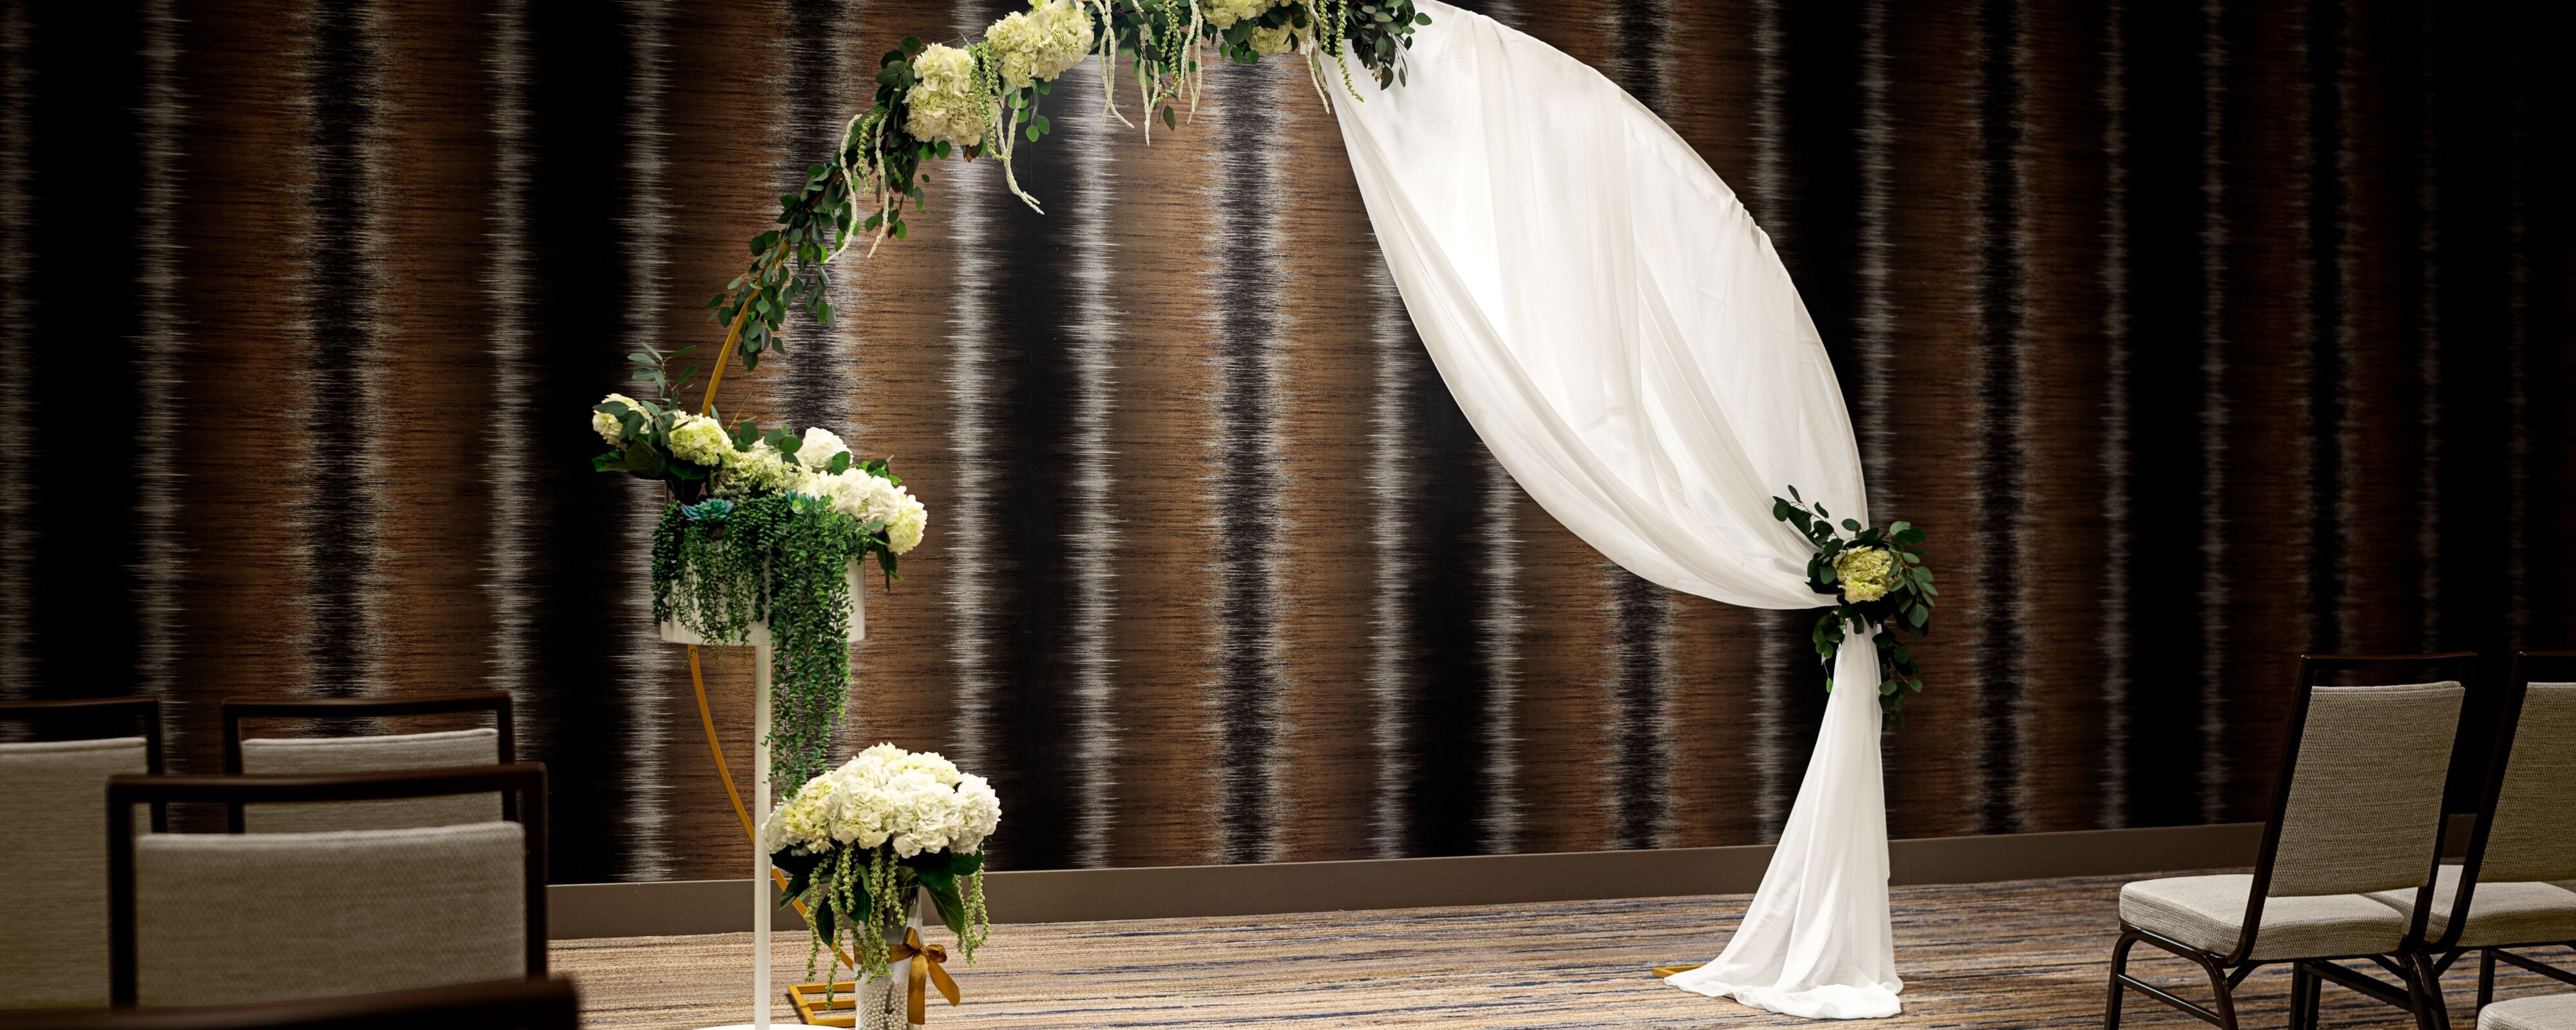 Indoor wedding ceremony setup